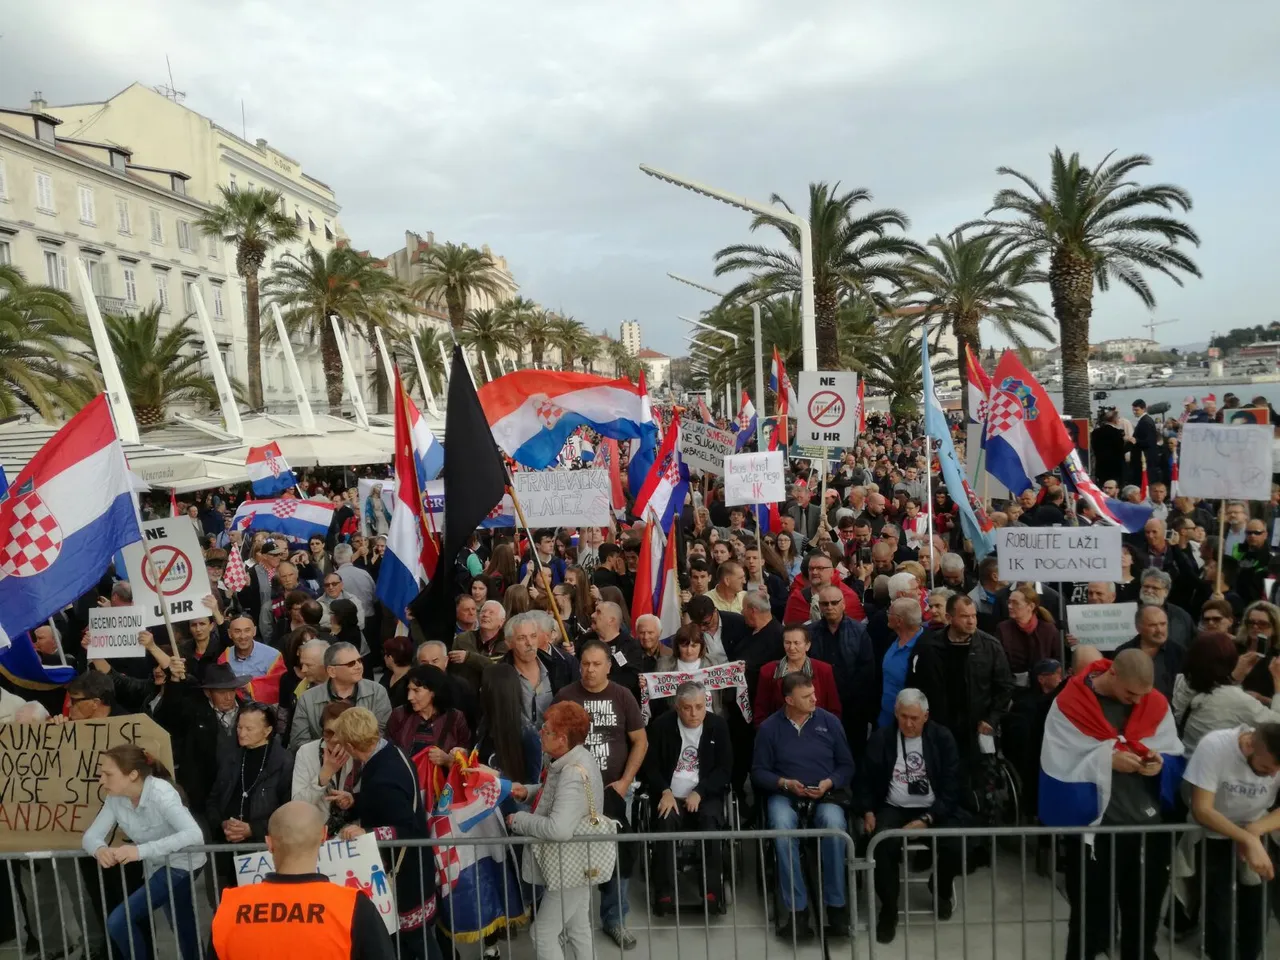 Prosvjed u Splitu